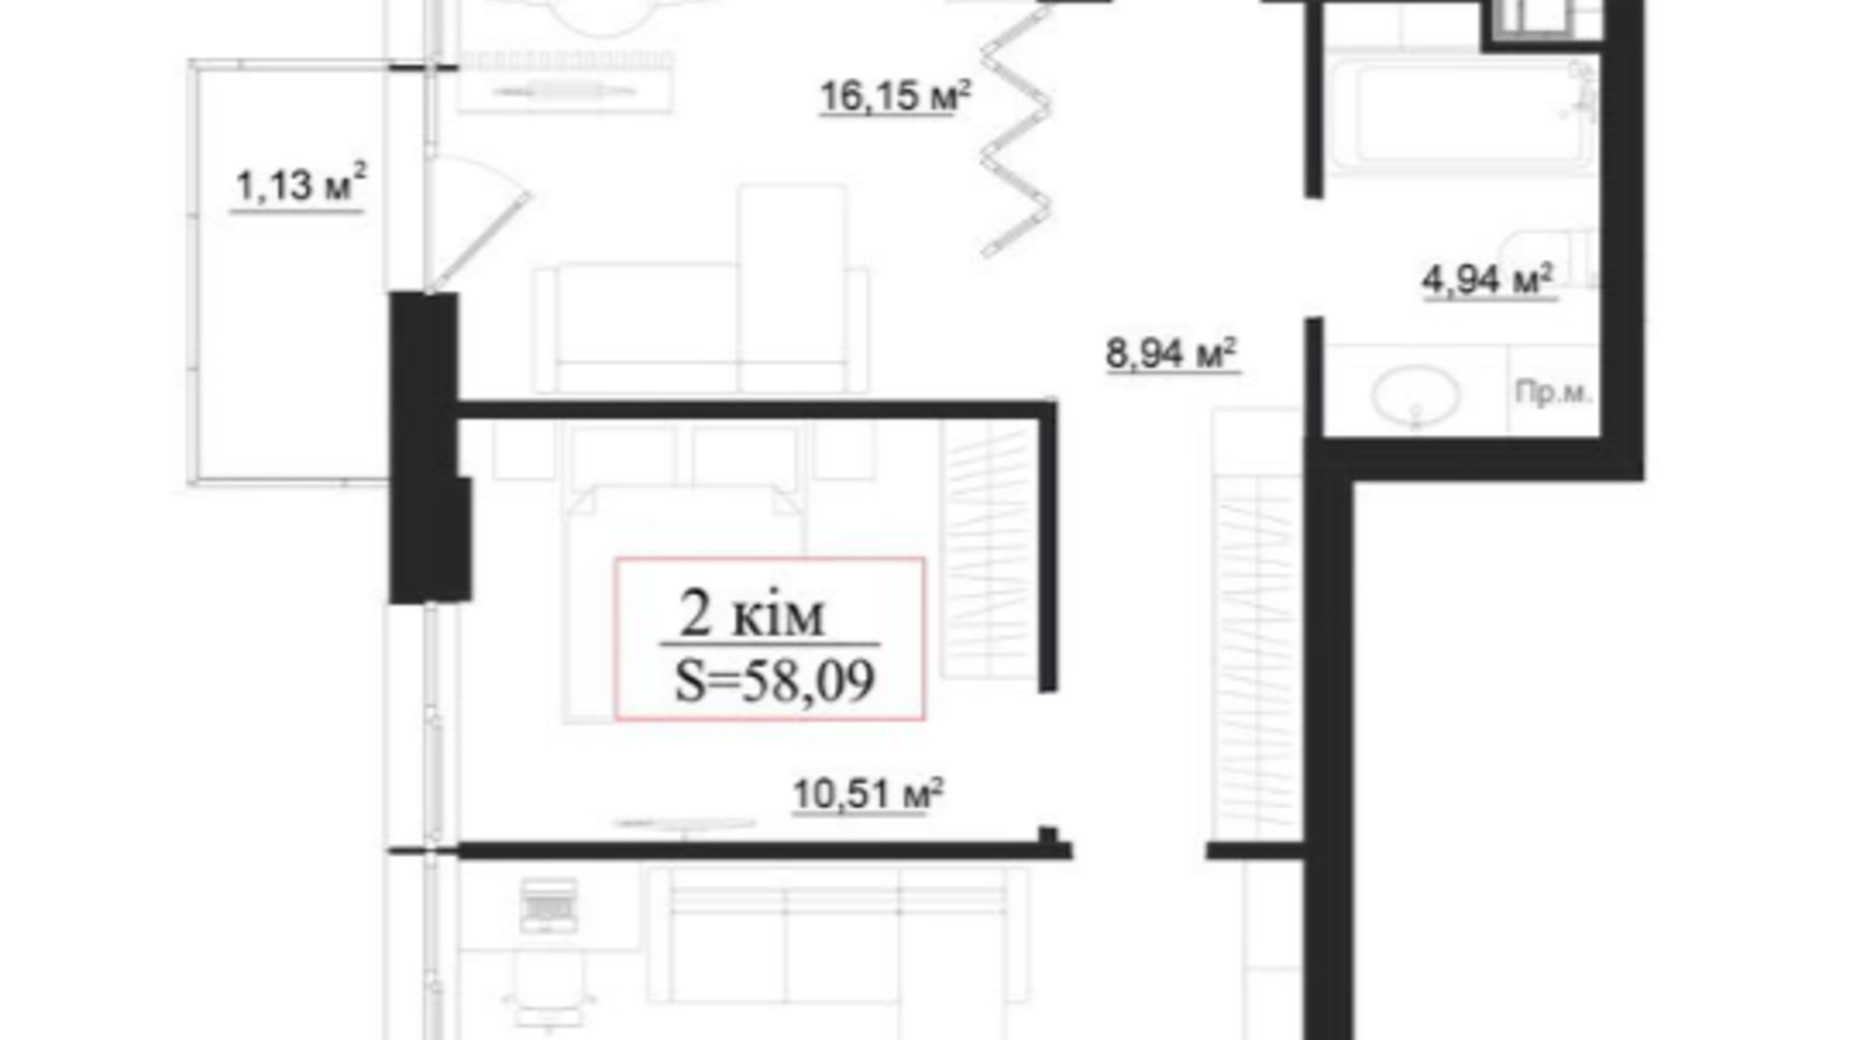 Планировка 2-комнатной квартиры в Клубный дом на Панаса Мирного 58.09 м², фото 659912